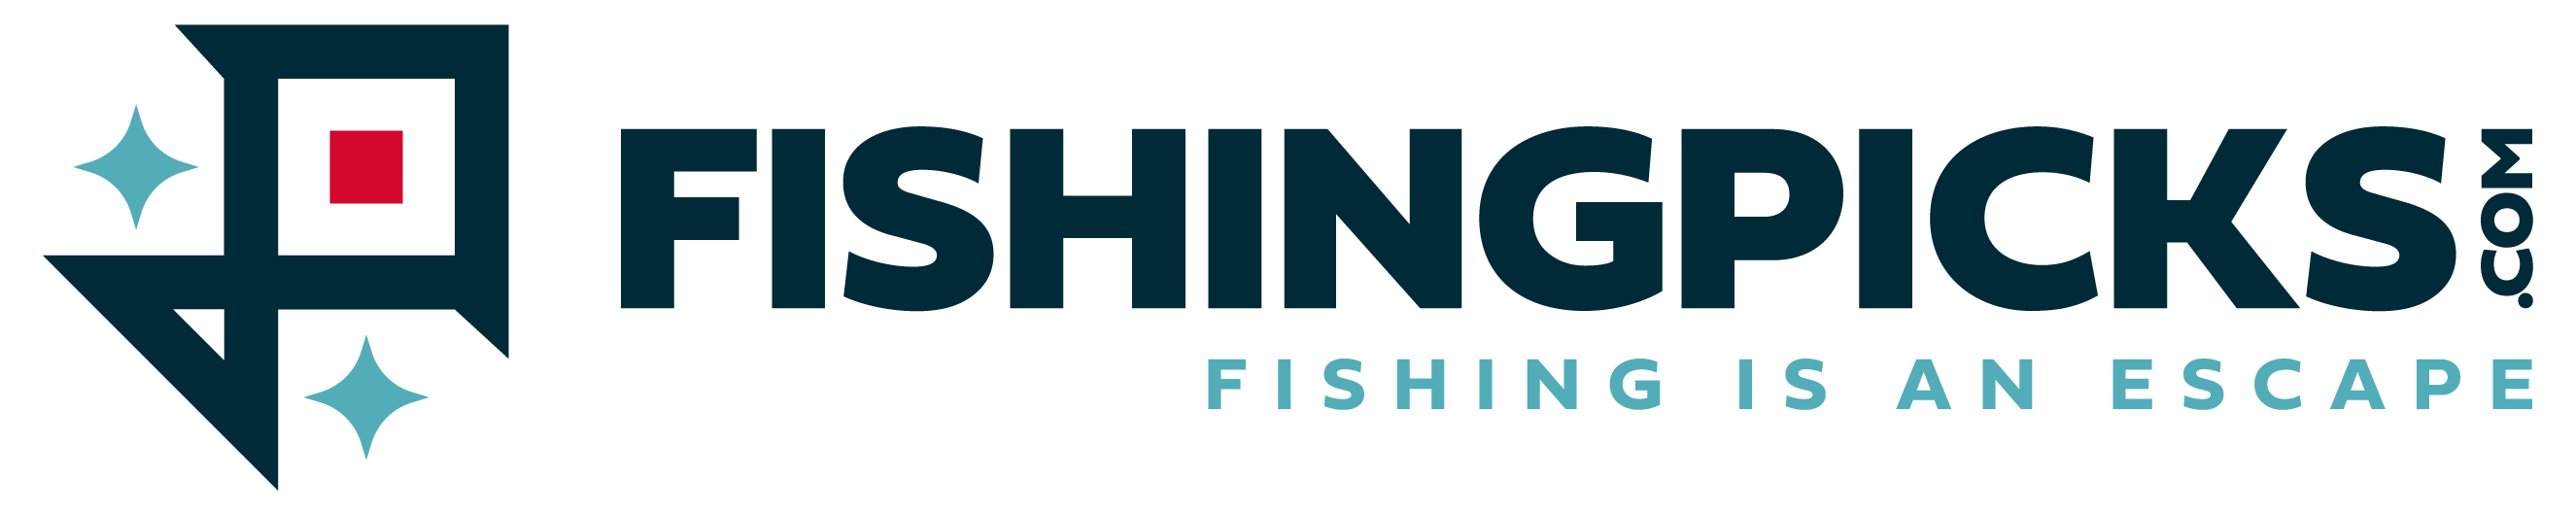 Fishingpicks.com – Reviews & Fishing Guides